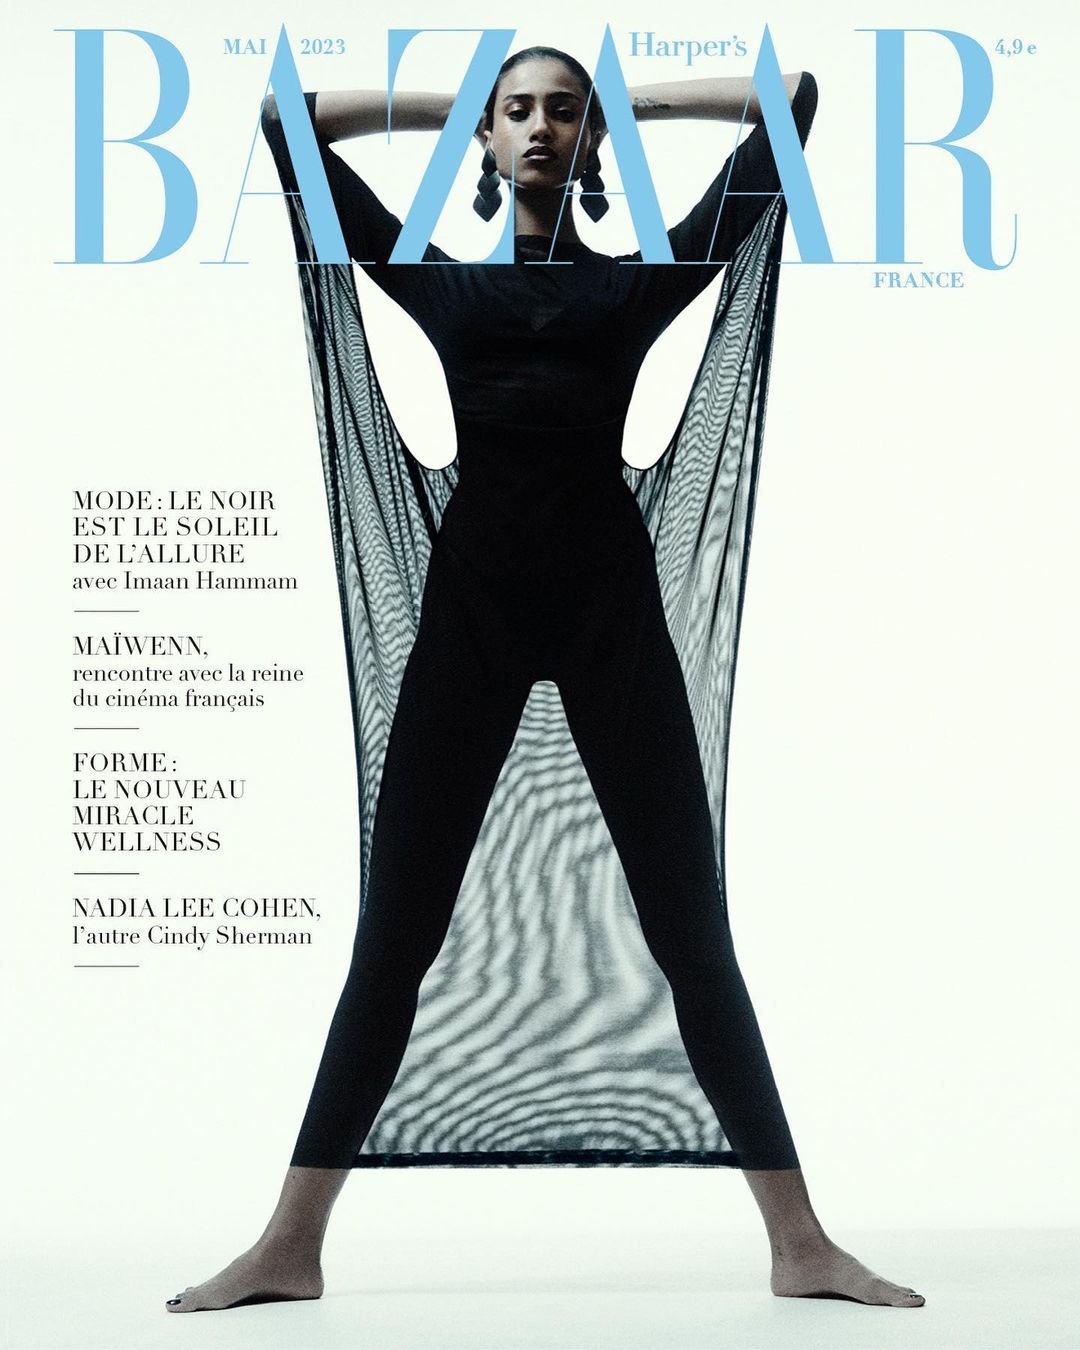 Imaan-Hammam-Robin-Galiegue-Harpers-Bazaar-France-May-2023-00017.jpg